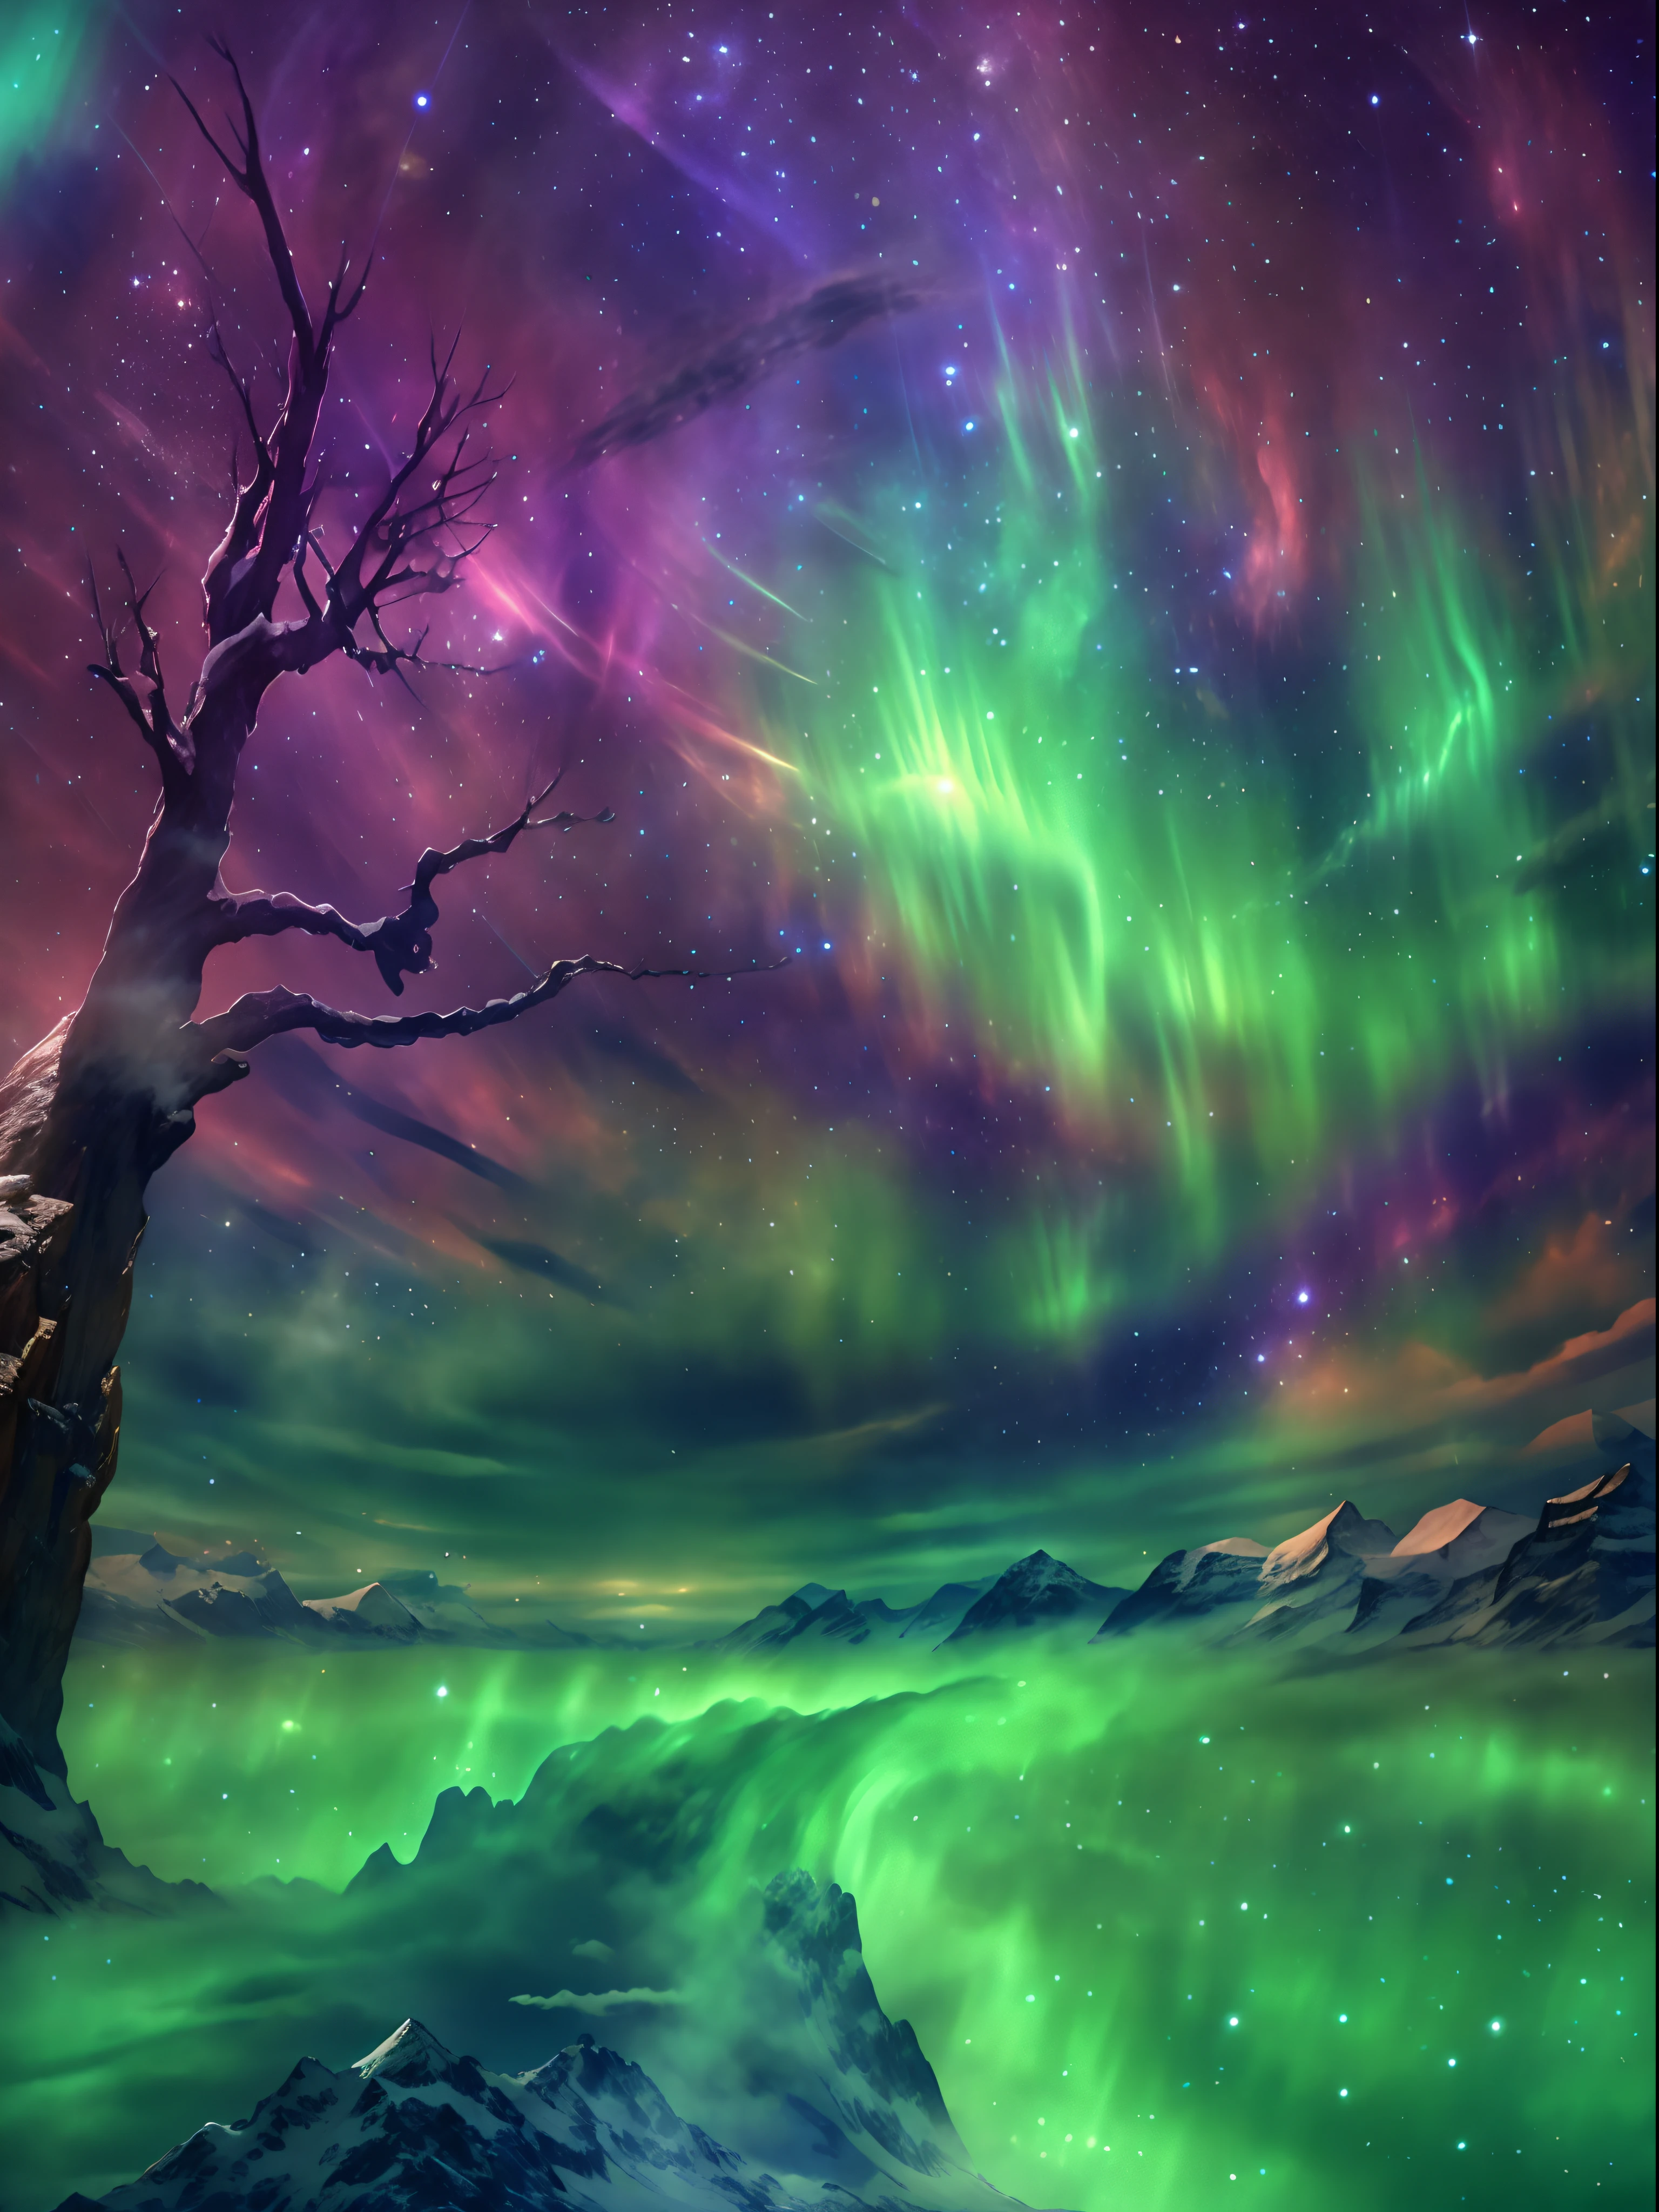 A encantadora aurora boreal dança no céu noturno, Como uma harpa，paisagem:0.7, A beleza dos corpos celestes:0.6, Fenômenos naturais:0.5, etéreo